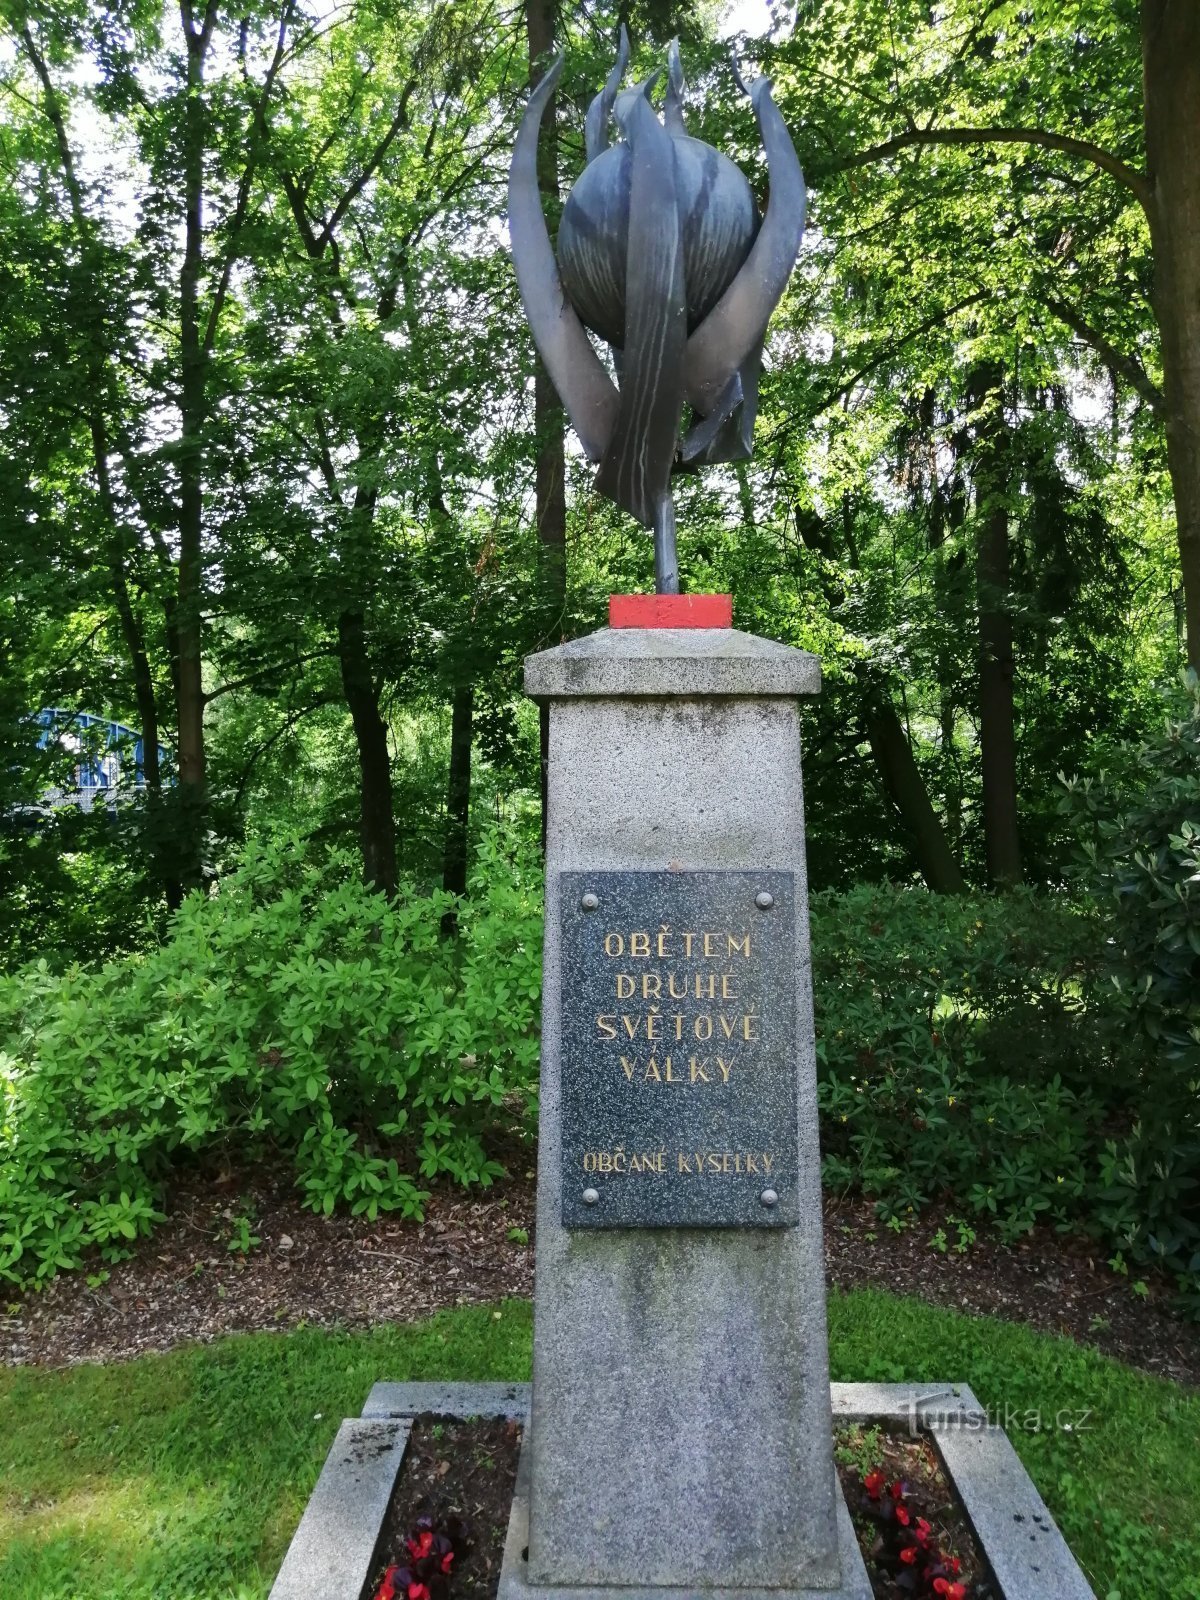 Đài tưởng niệm các nạn nhân của Chiến tranh thế giới thứ hai - Kyselka